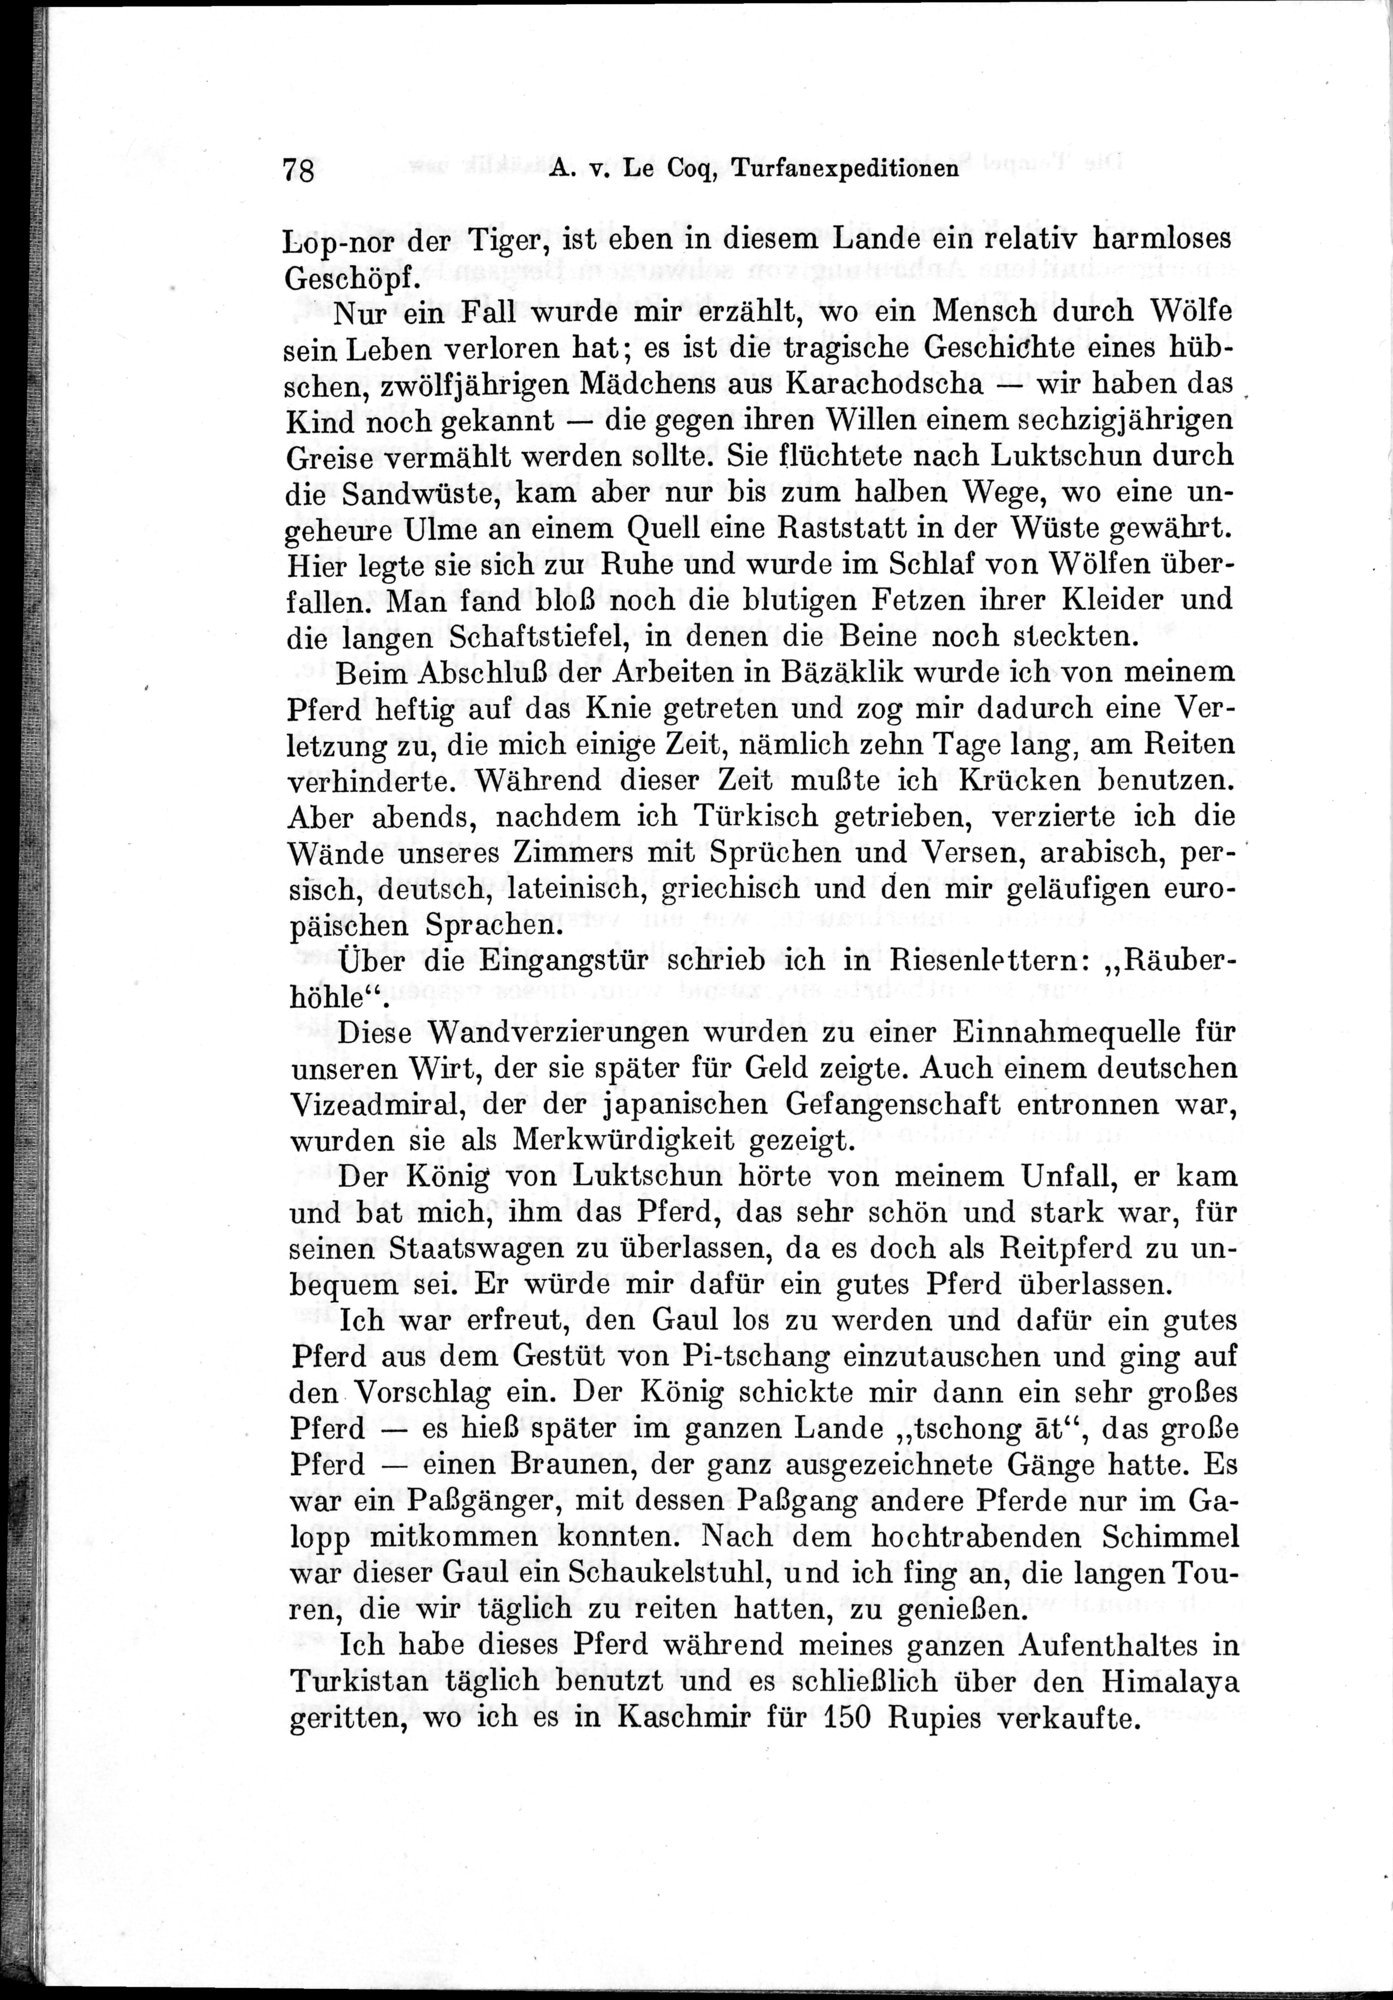 Auf Hellas Spuren in Ostturkistan : vol.1 / Page 116 (Grayscale High Resolution Image)